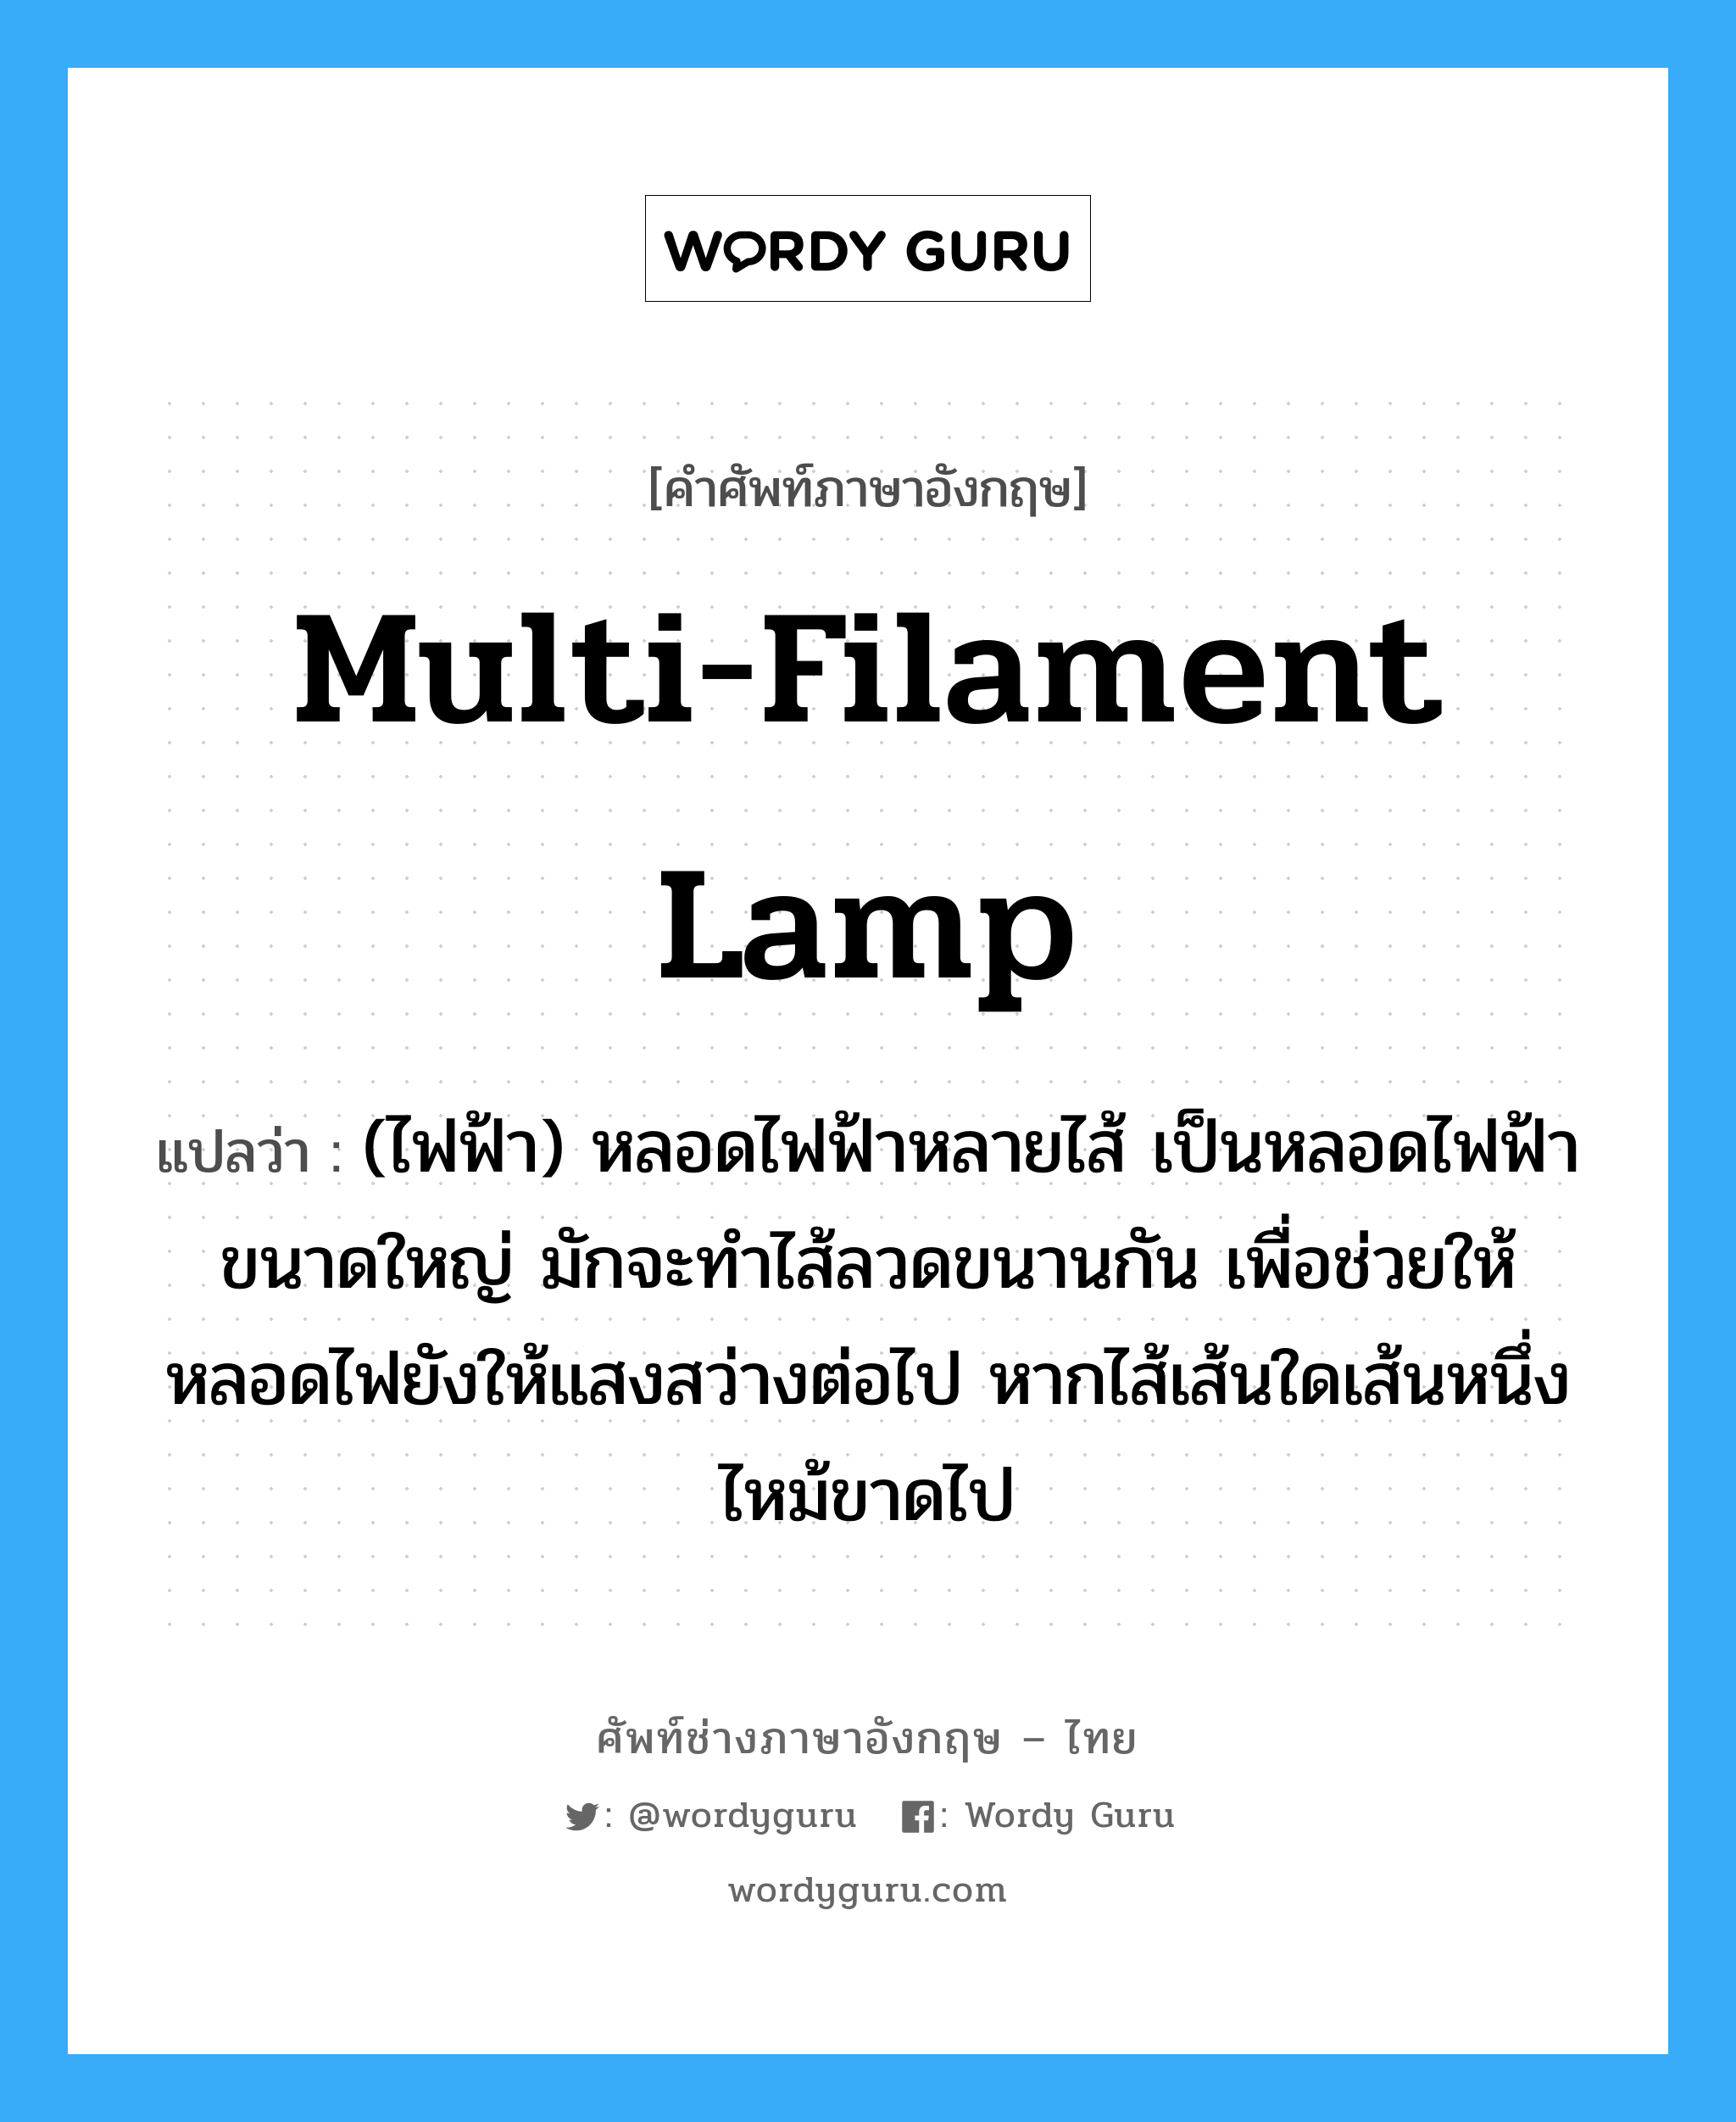 multi-filament lamp แปลว่า?, คำศัพท์ช่างภาษาอังกฤษ - ไทย multi-filament lamp คำศัพท์ภาษาอังกฤษ multi-filament lamp แปลว่า (ไฟฟ้า) หลอดไฟฟ้าหลายไส้ เป็นหลอดไฟฟ้าขนาดใหญ่ มักจะทำไส้ลวดขนานกัน เพื่อช่วยให้หลอดไฟยังให้แสงสว่างต่อไป หากไส้เส้นใดเส้นหนึ่งไหม้ขาดไป